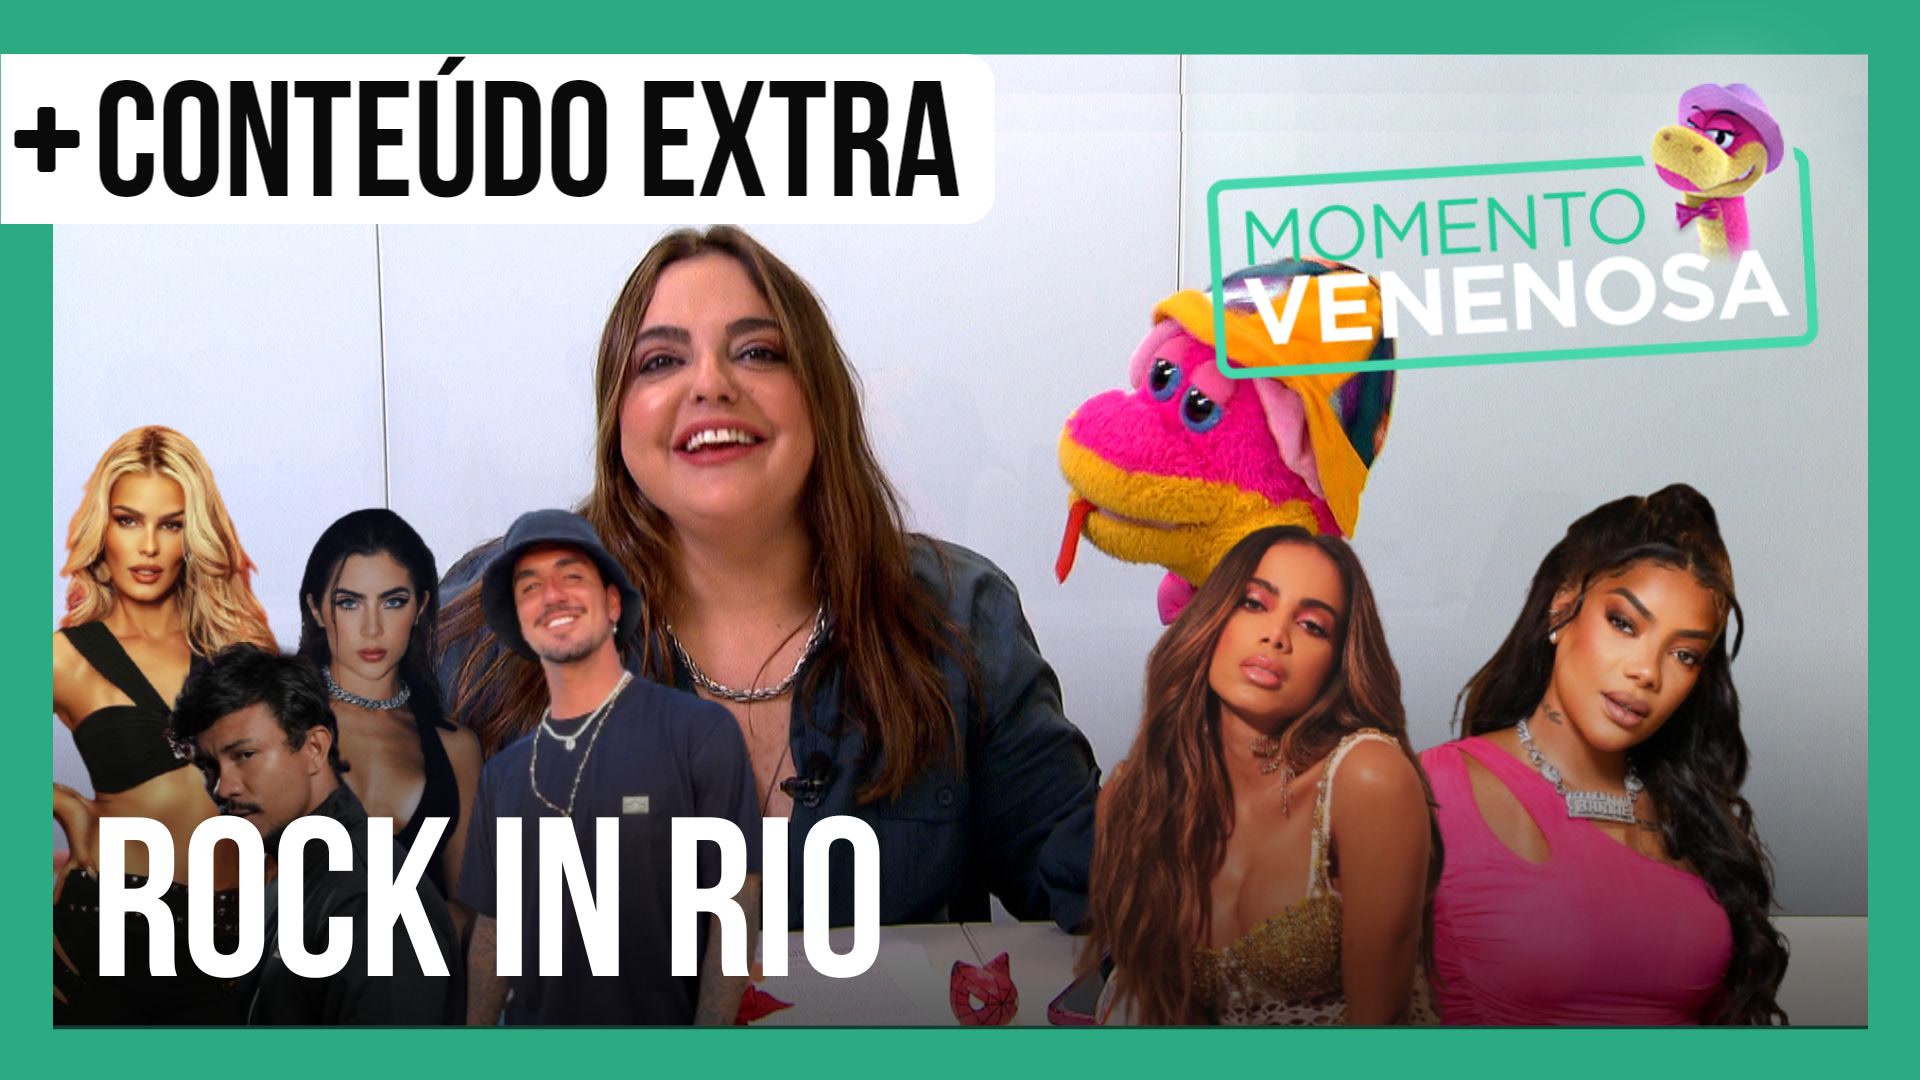 Vídeo: Treta entre Anitta e Ludmilla, pegação e famosos barrados: confira os bastidores do Rock in Rio | Momento Venenosa